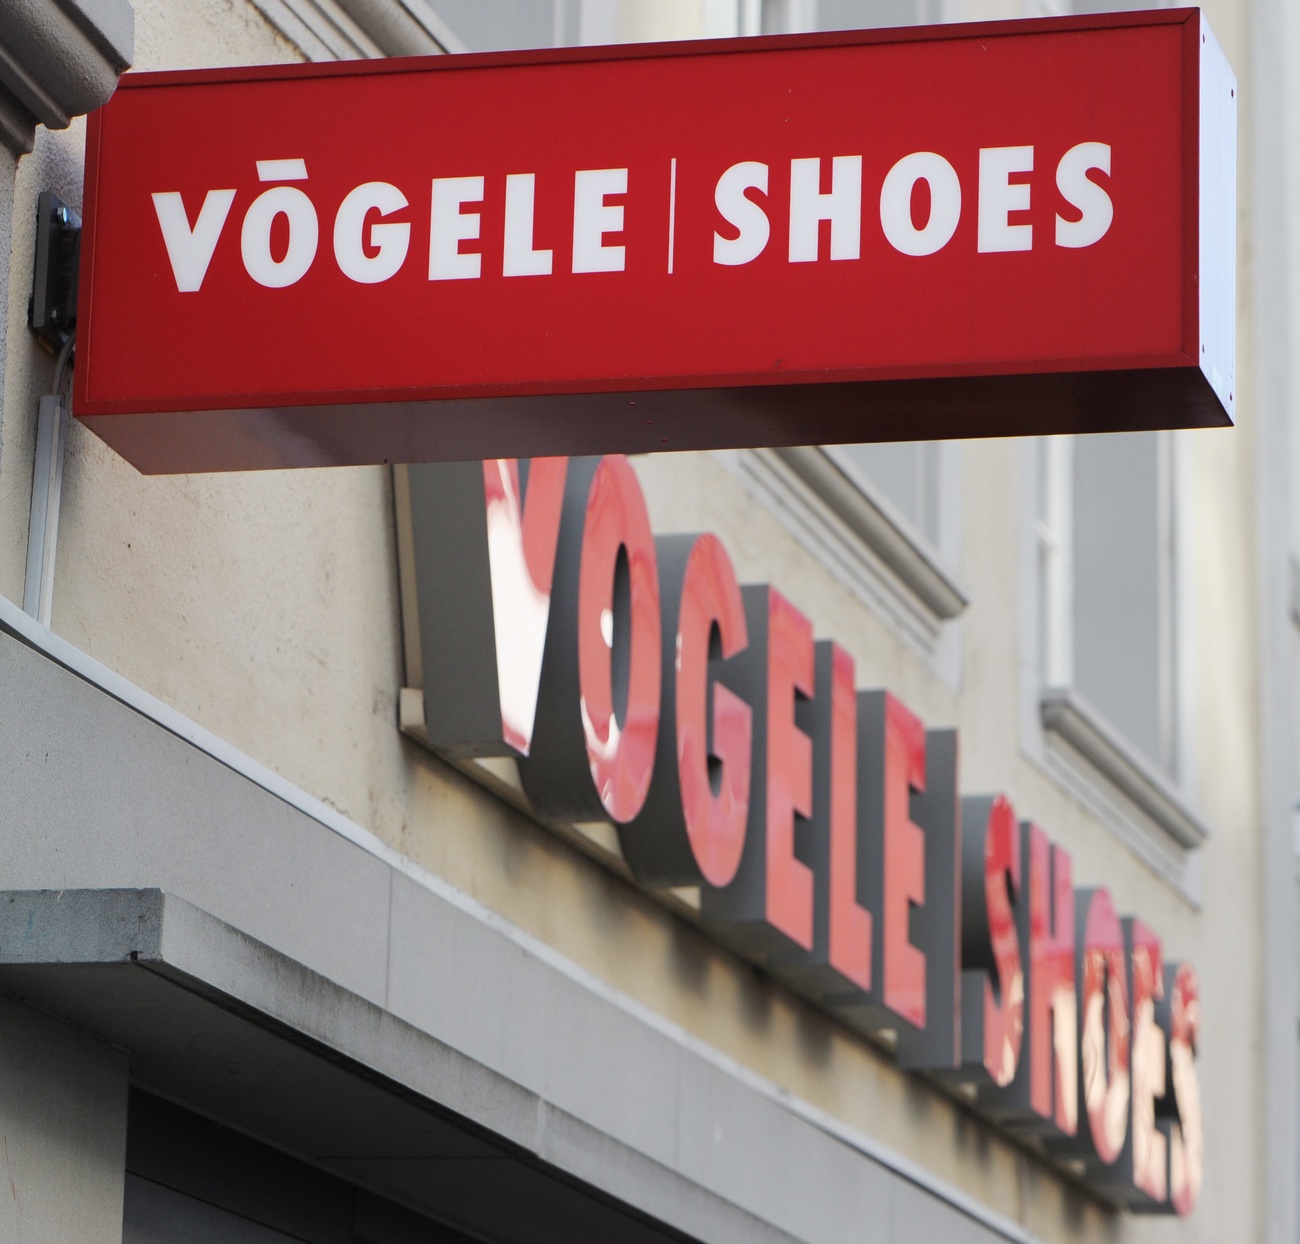 Vögele Shoes shop